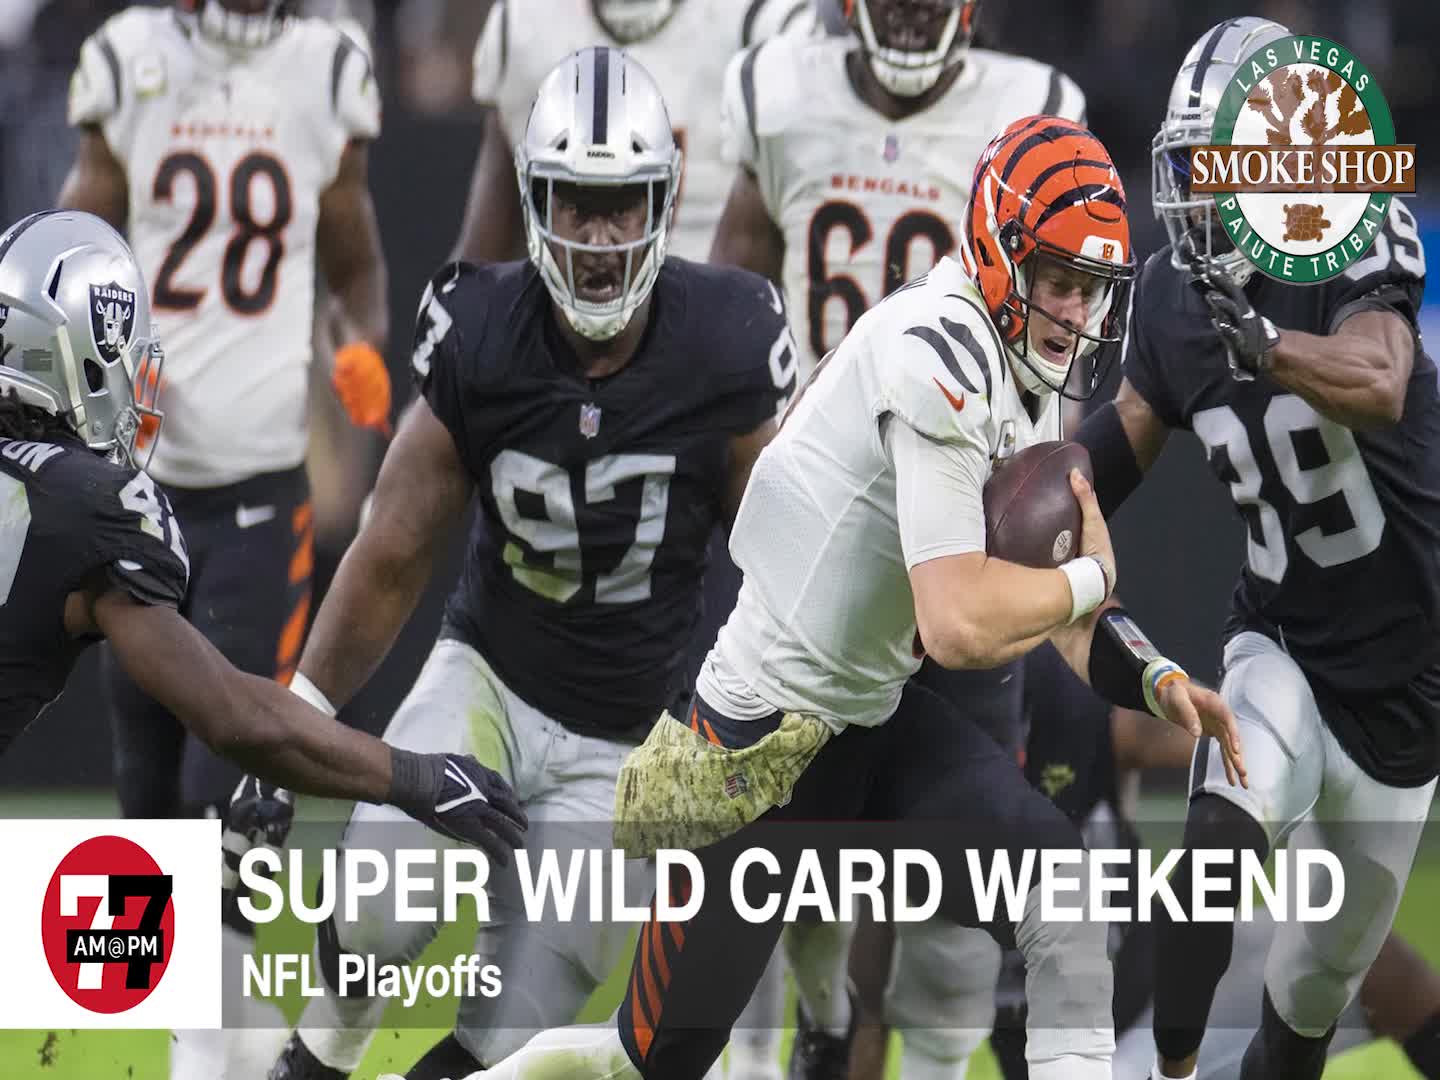 Super Wild Card Weekend